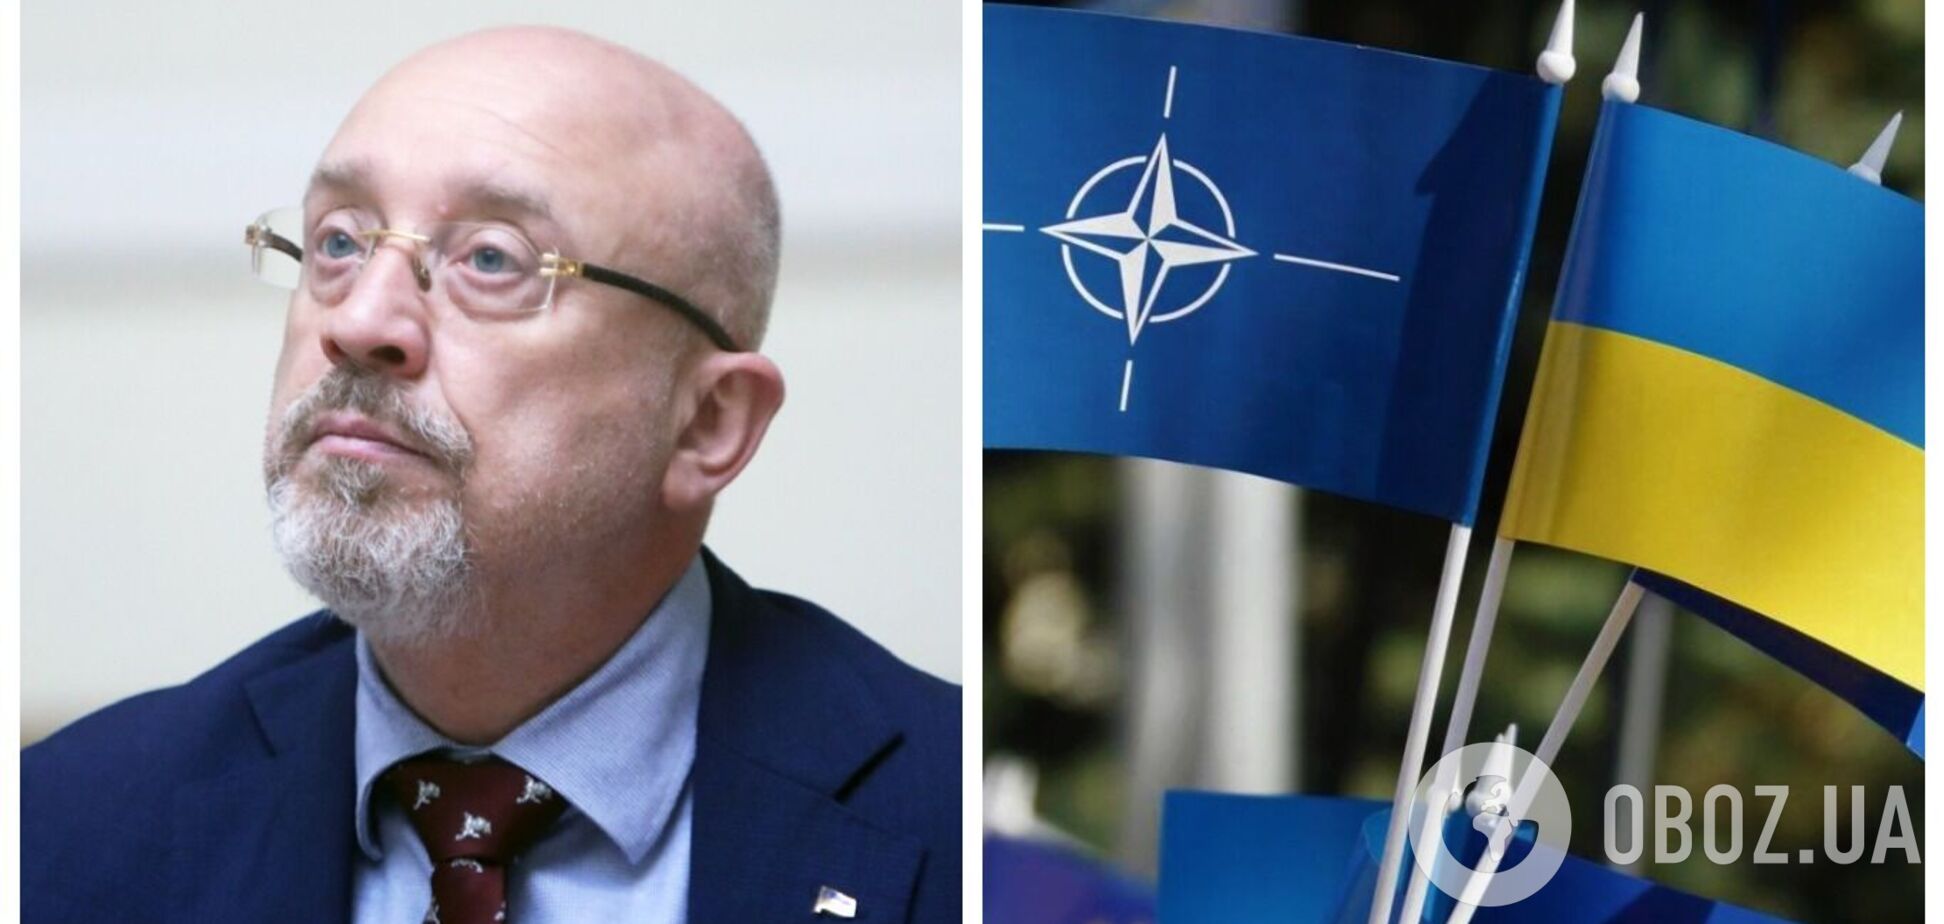 Резников о перспективах вступления Украины в НАТО: должны делать ставку на интеграцию де-факто, принимая все лучшее